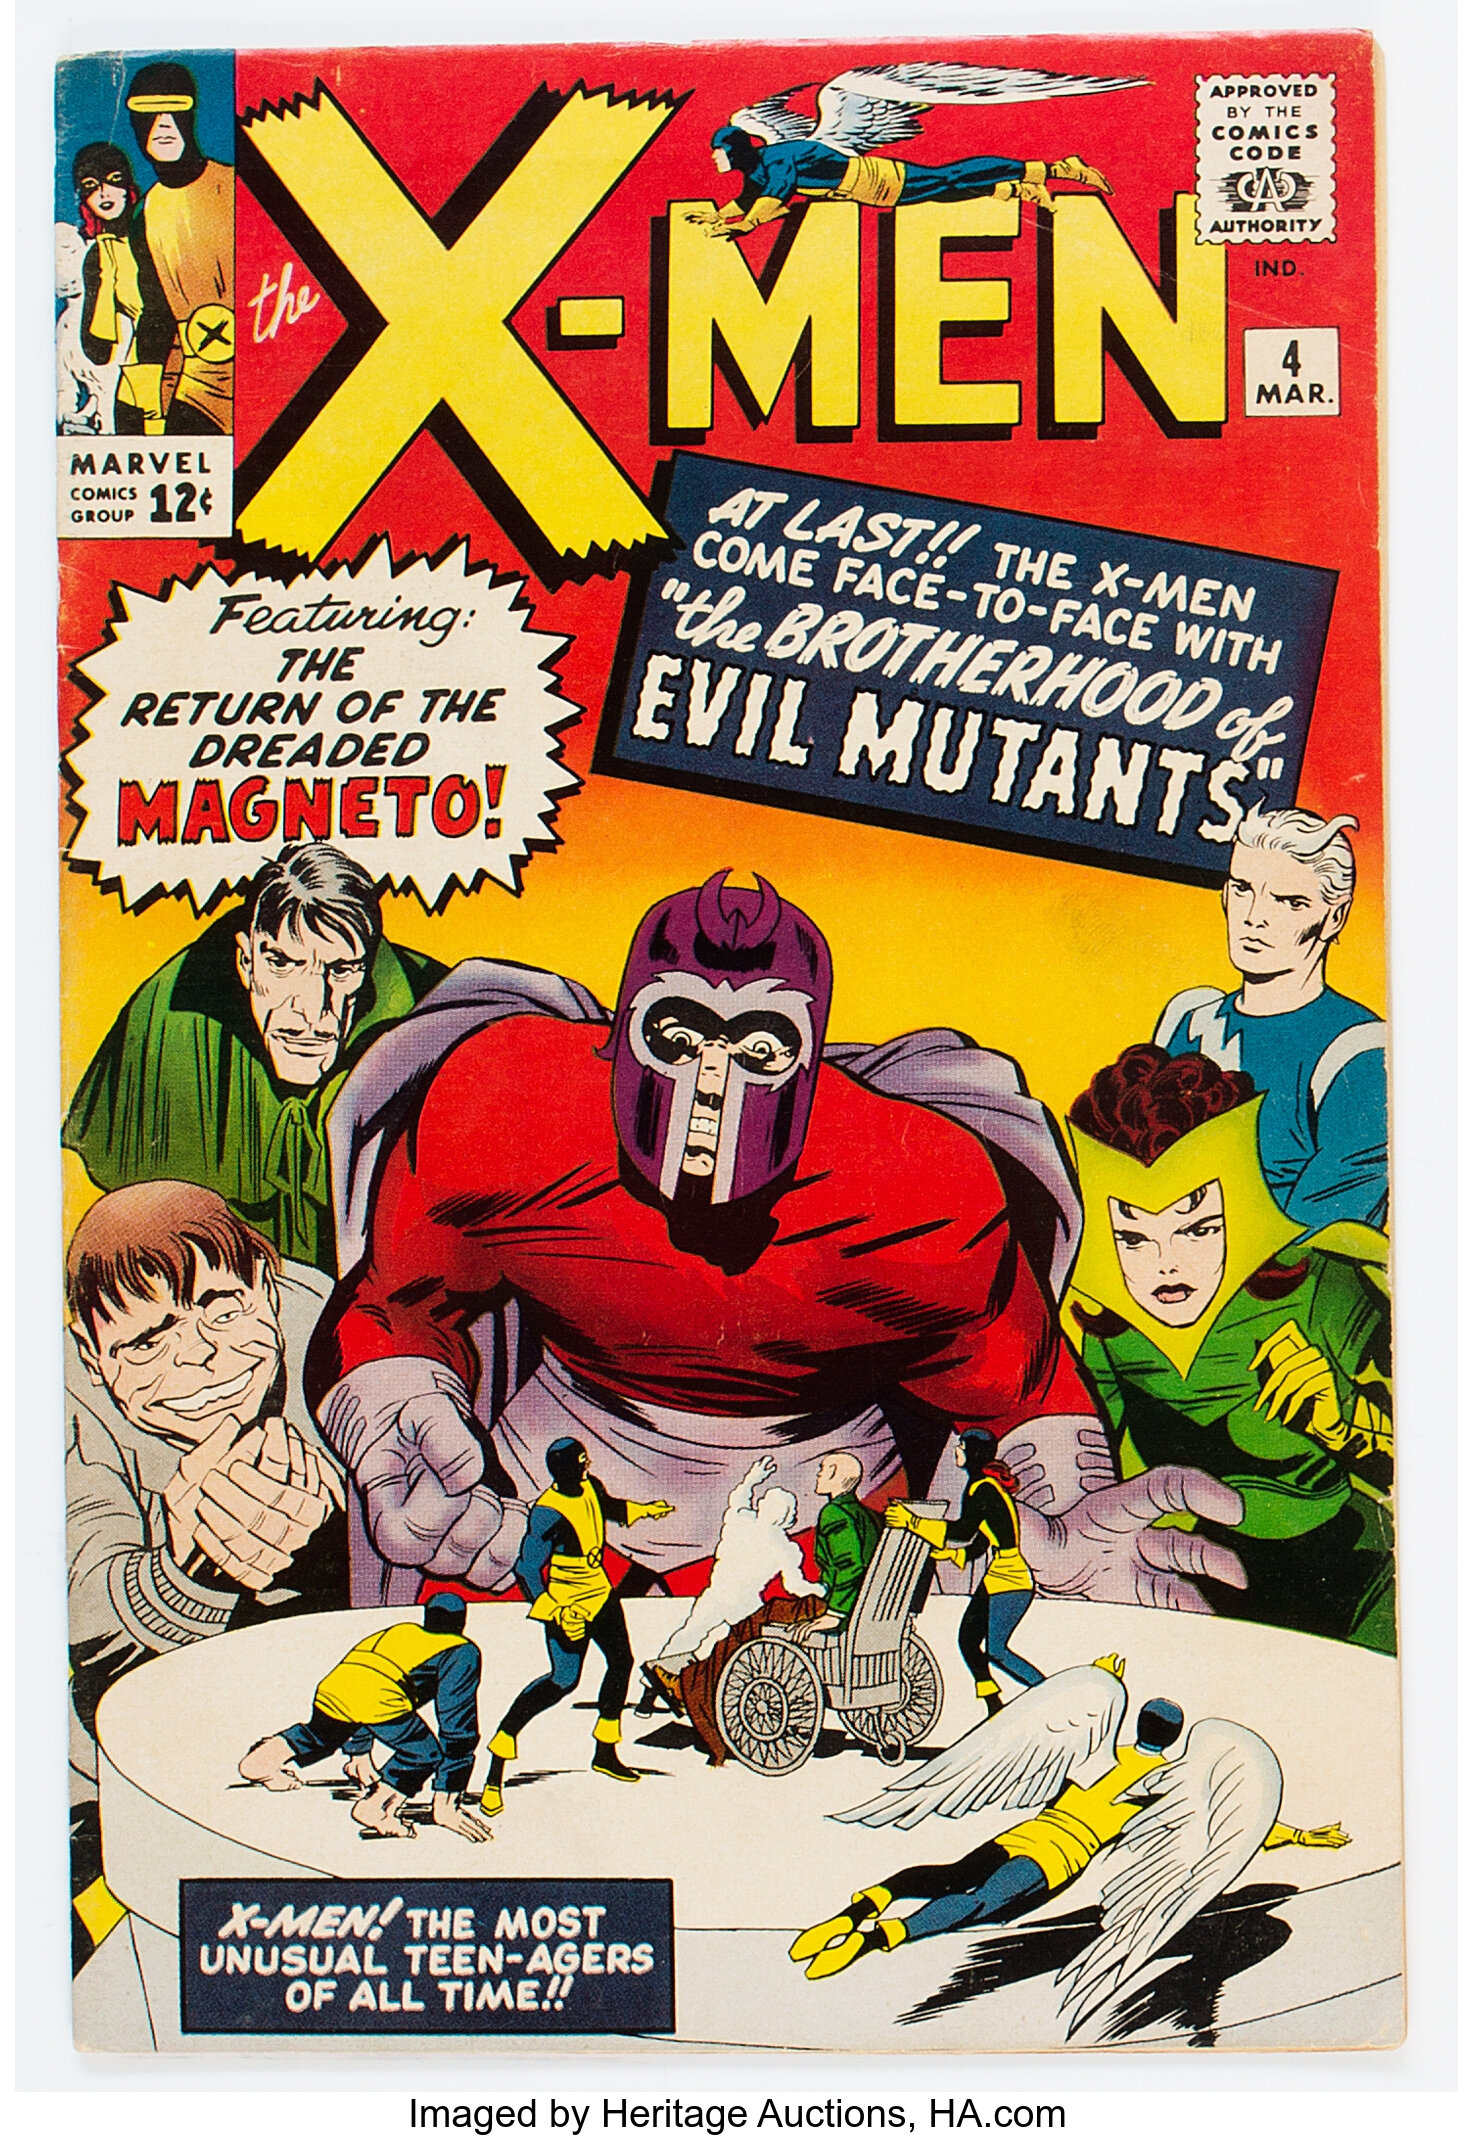 X-Men #4 (Marvel, 1964) Uncertified VG 4.0, $1,320.00